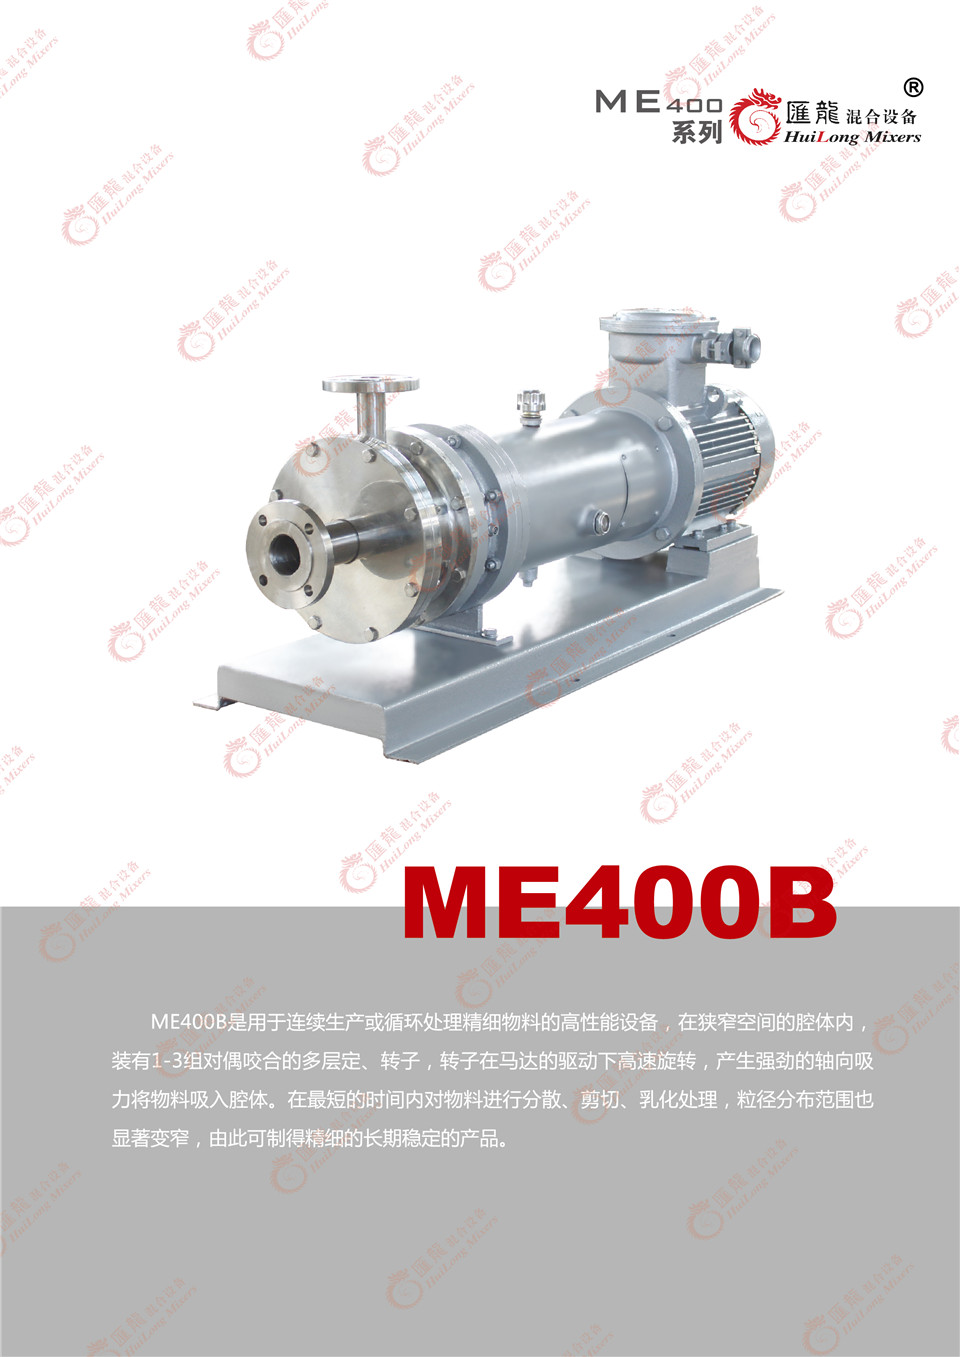 “ME400-3型乳化机”/